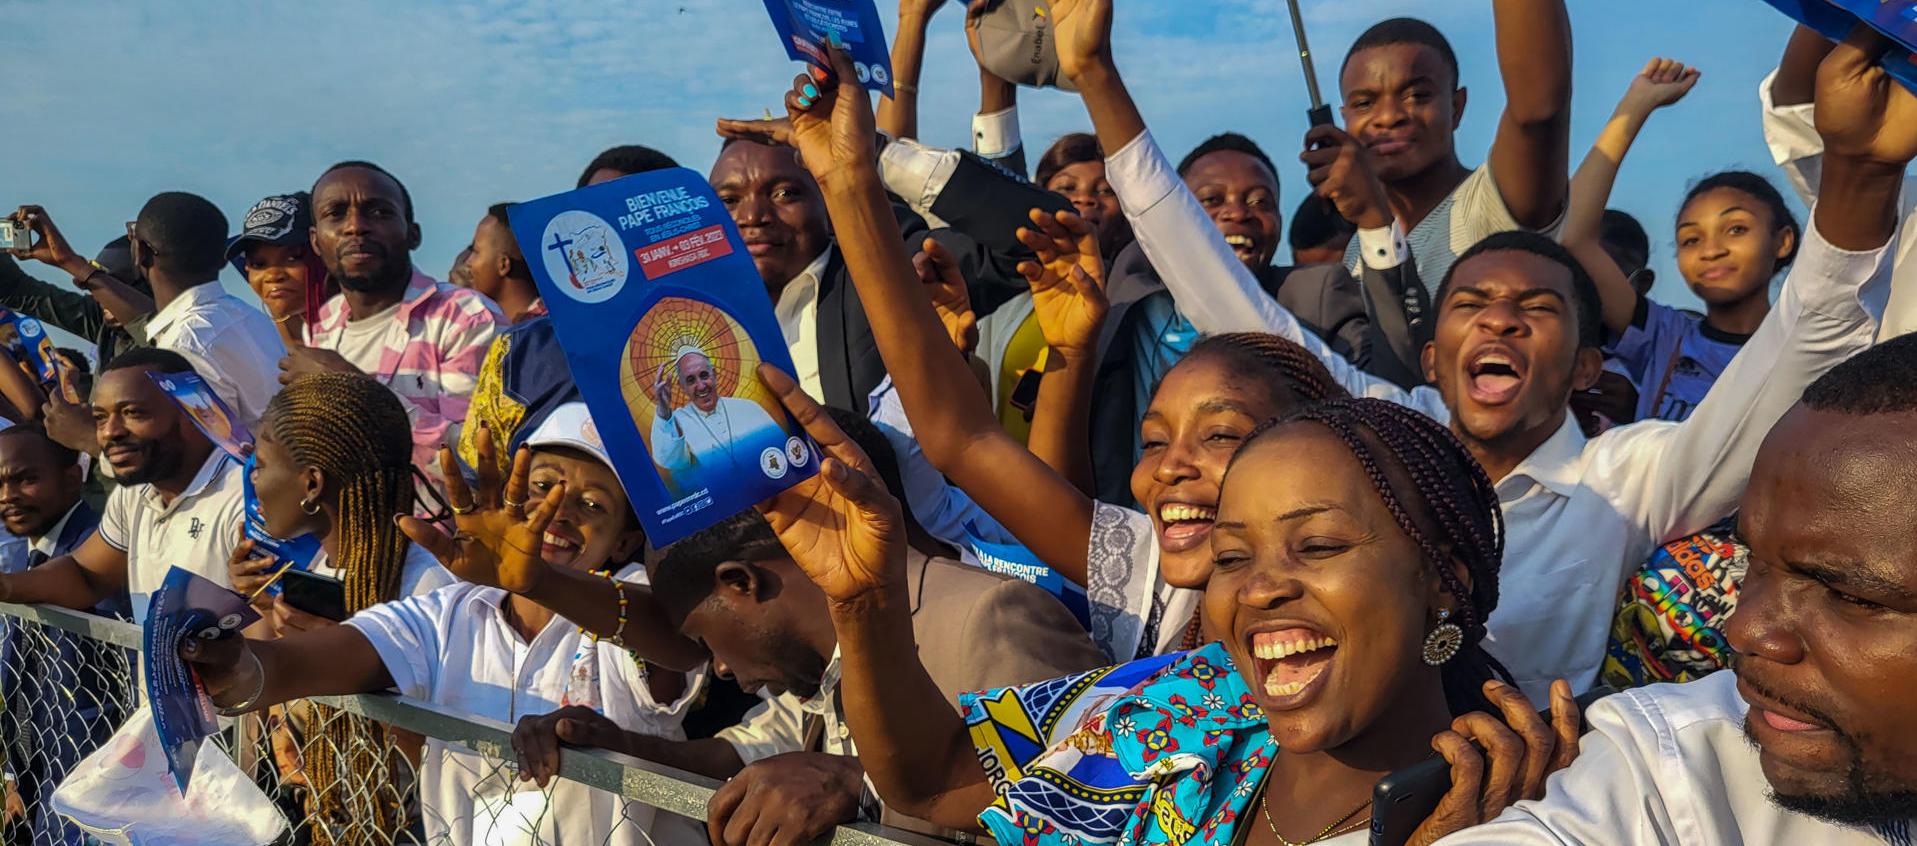 Cientos de fieles asistieron a la misa que el papa Francisco celebró en el aeropuerto "Ndolo" de la capital de la República Democrática del Congo.